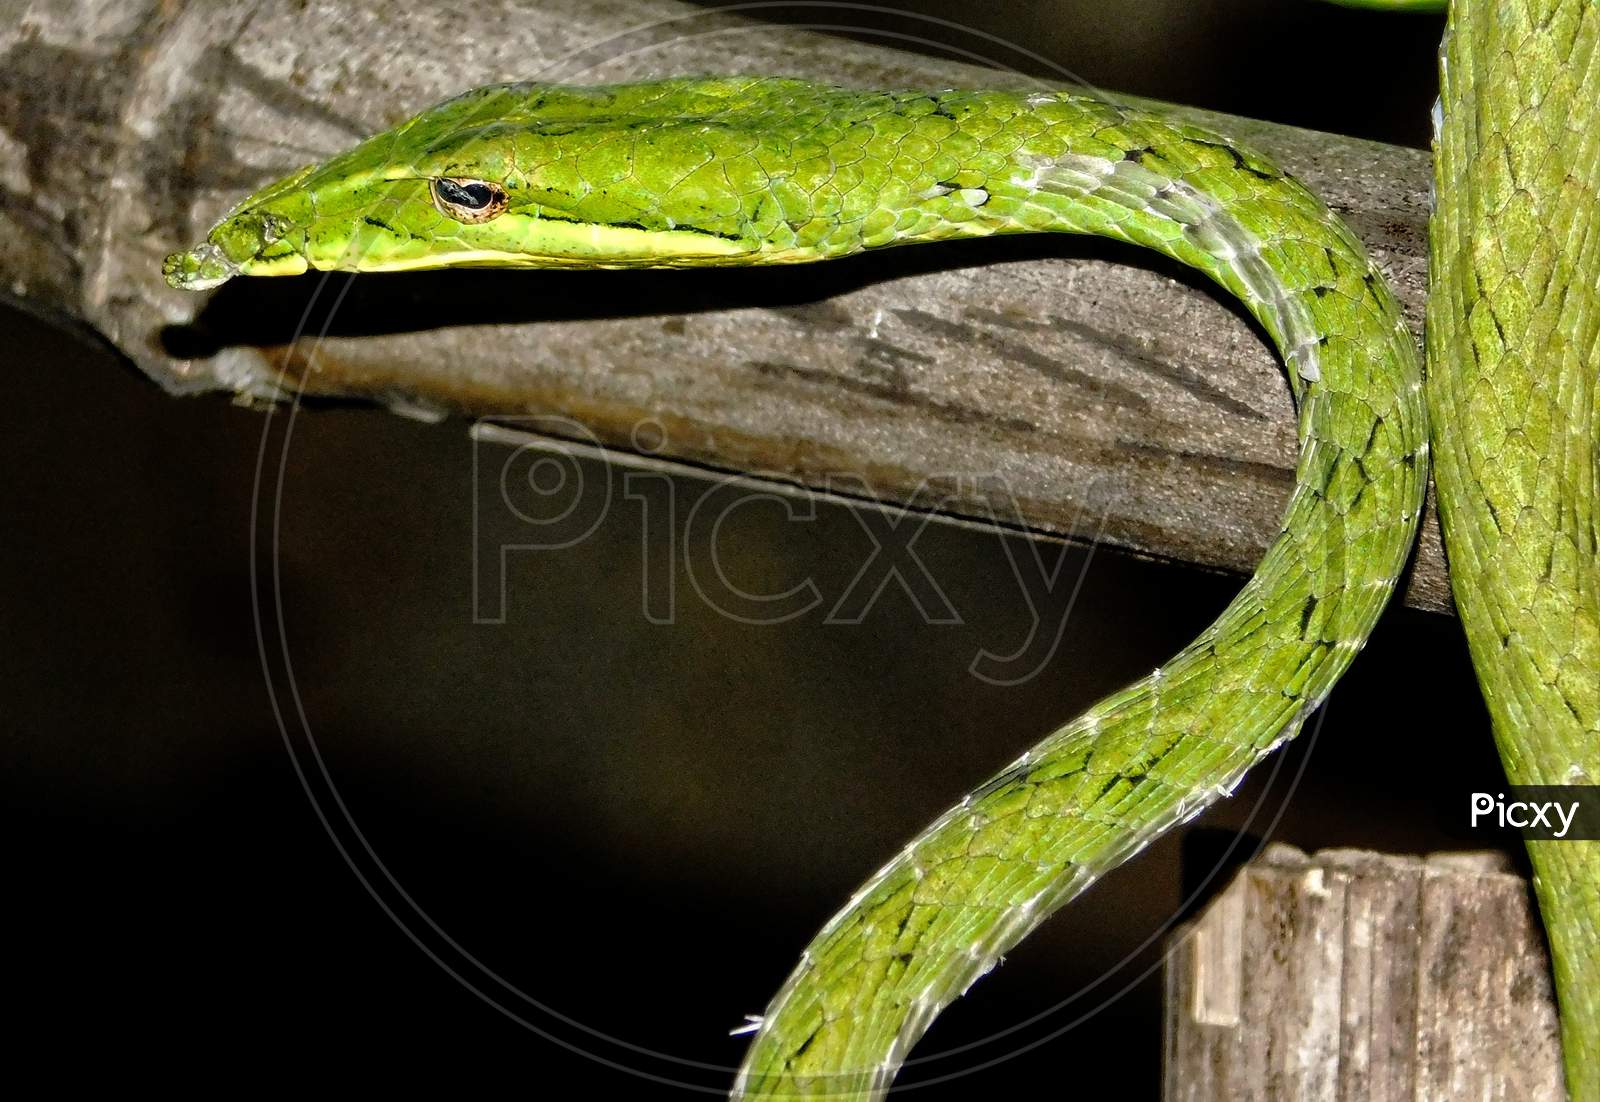 The green vine snake.